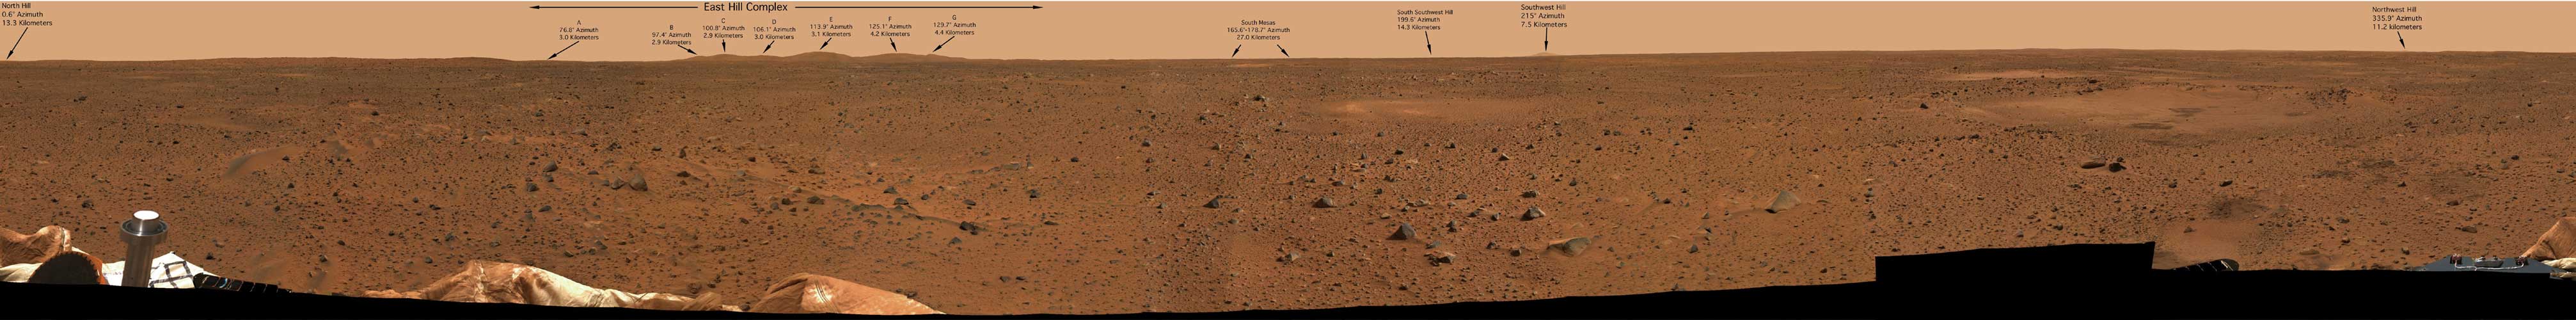 Panorámica de Marte tomada por el robot todoterreno Spirit